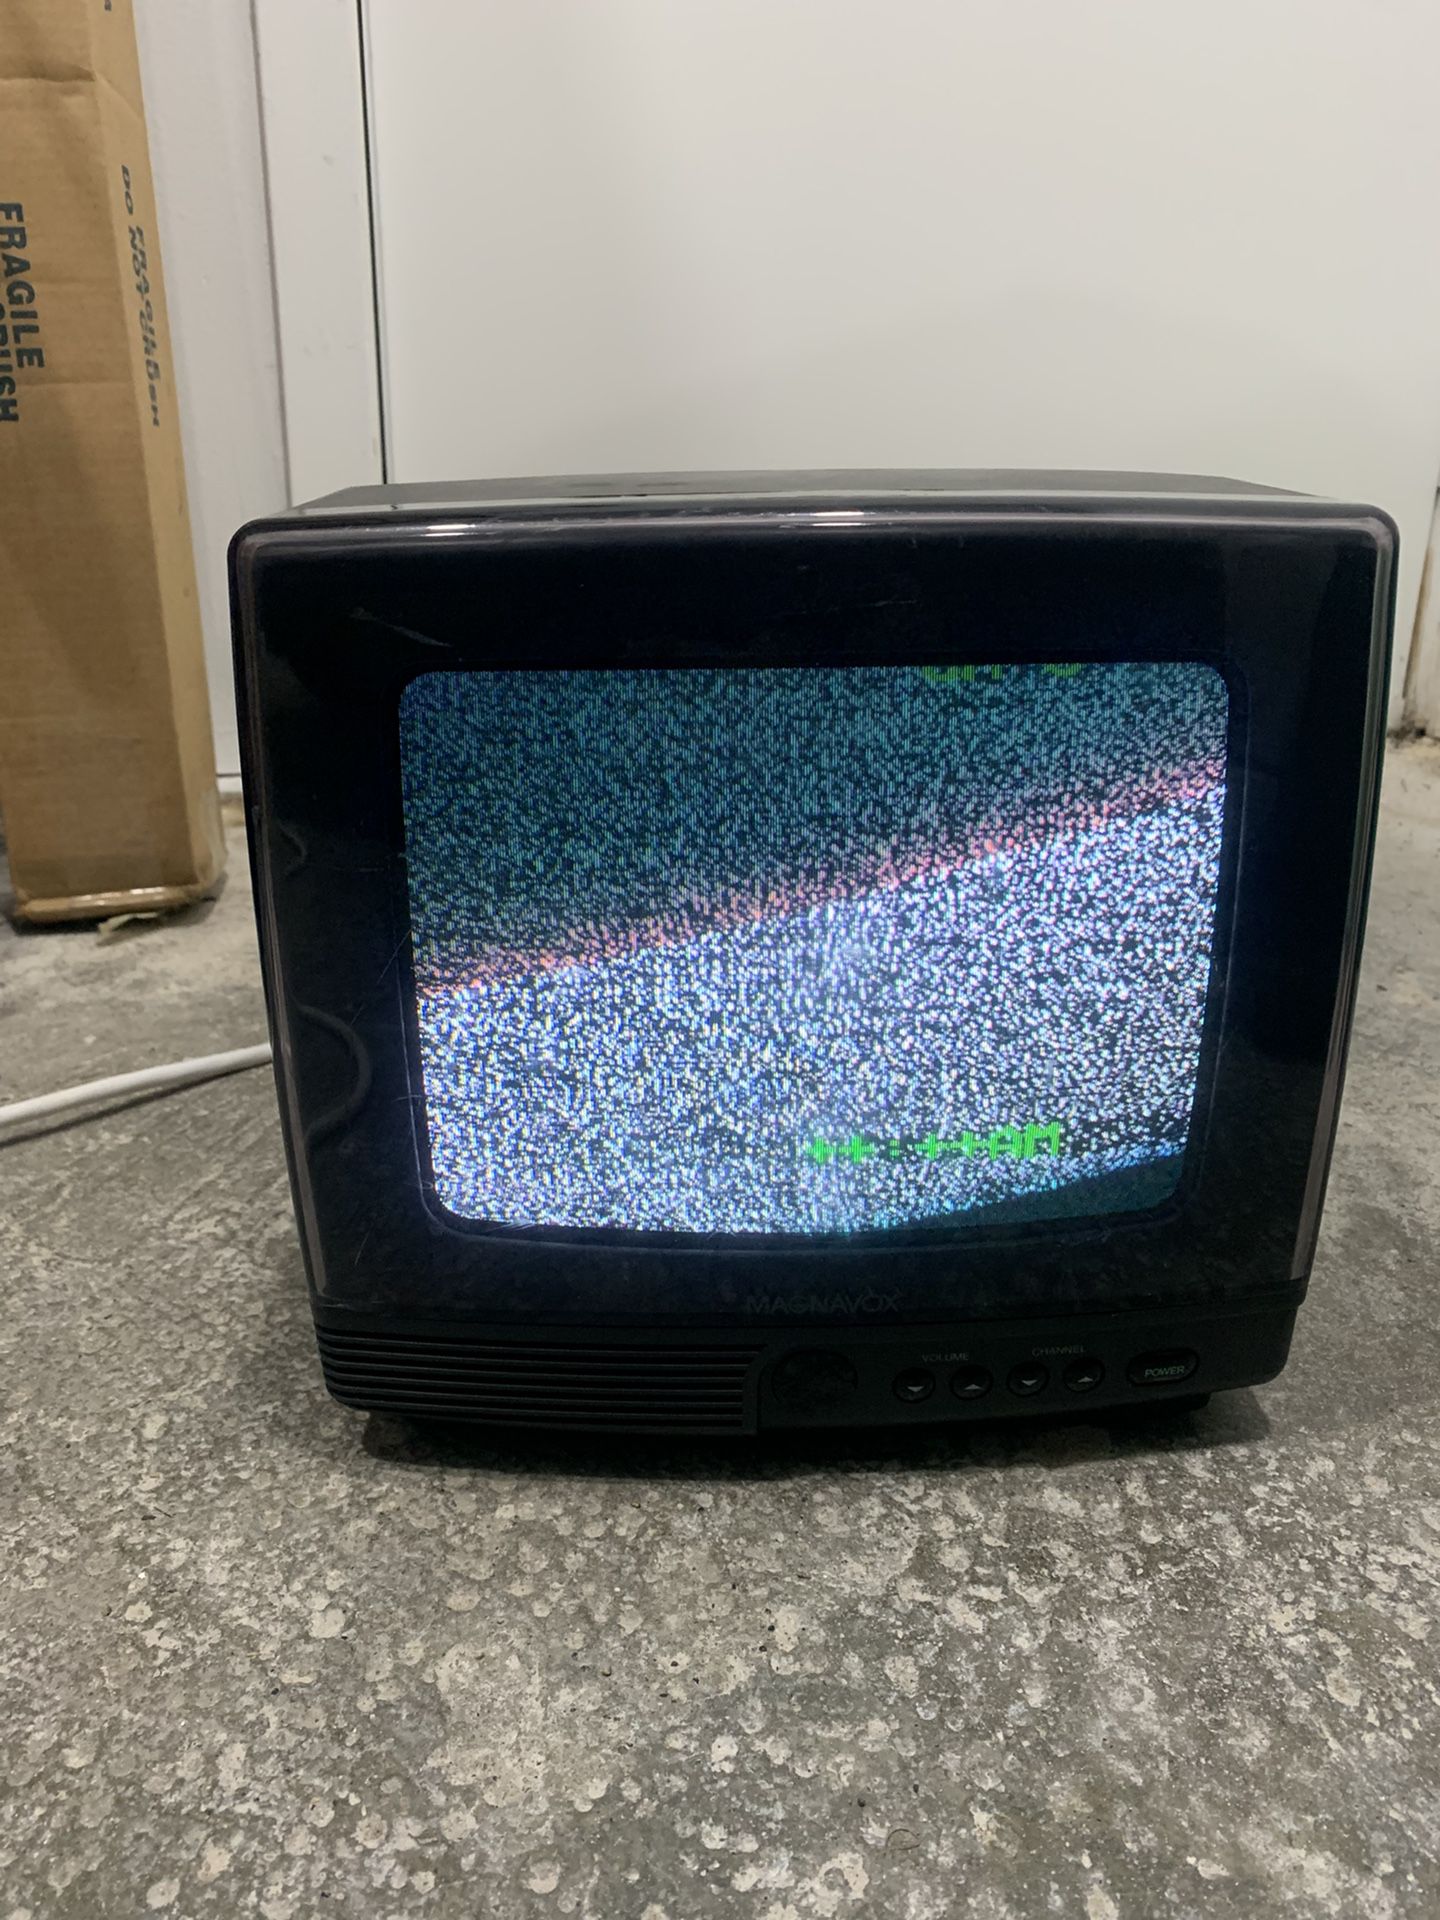 Magnavox 9" TV CRT Color Portable Retro Gaming TV. NO REMOTE